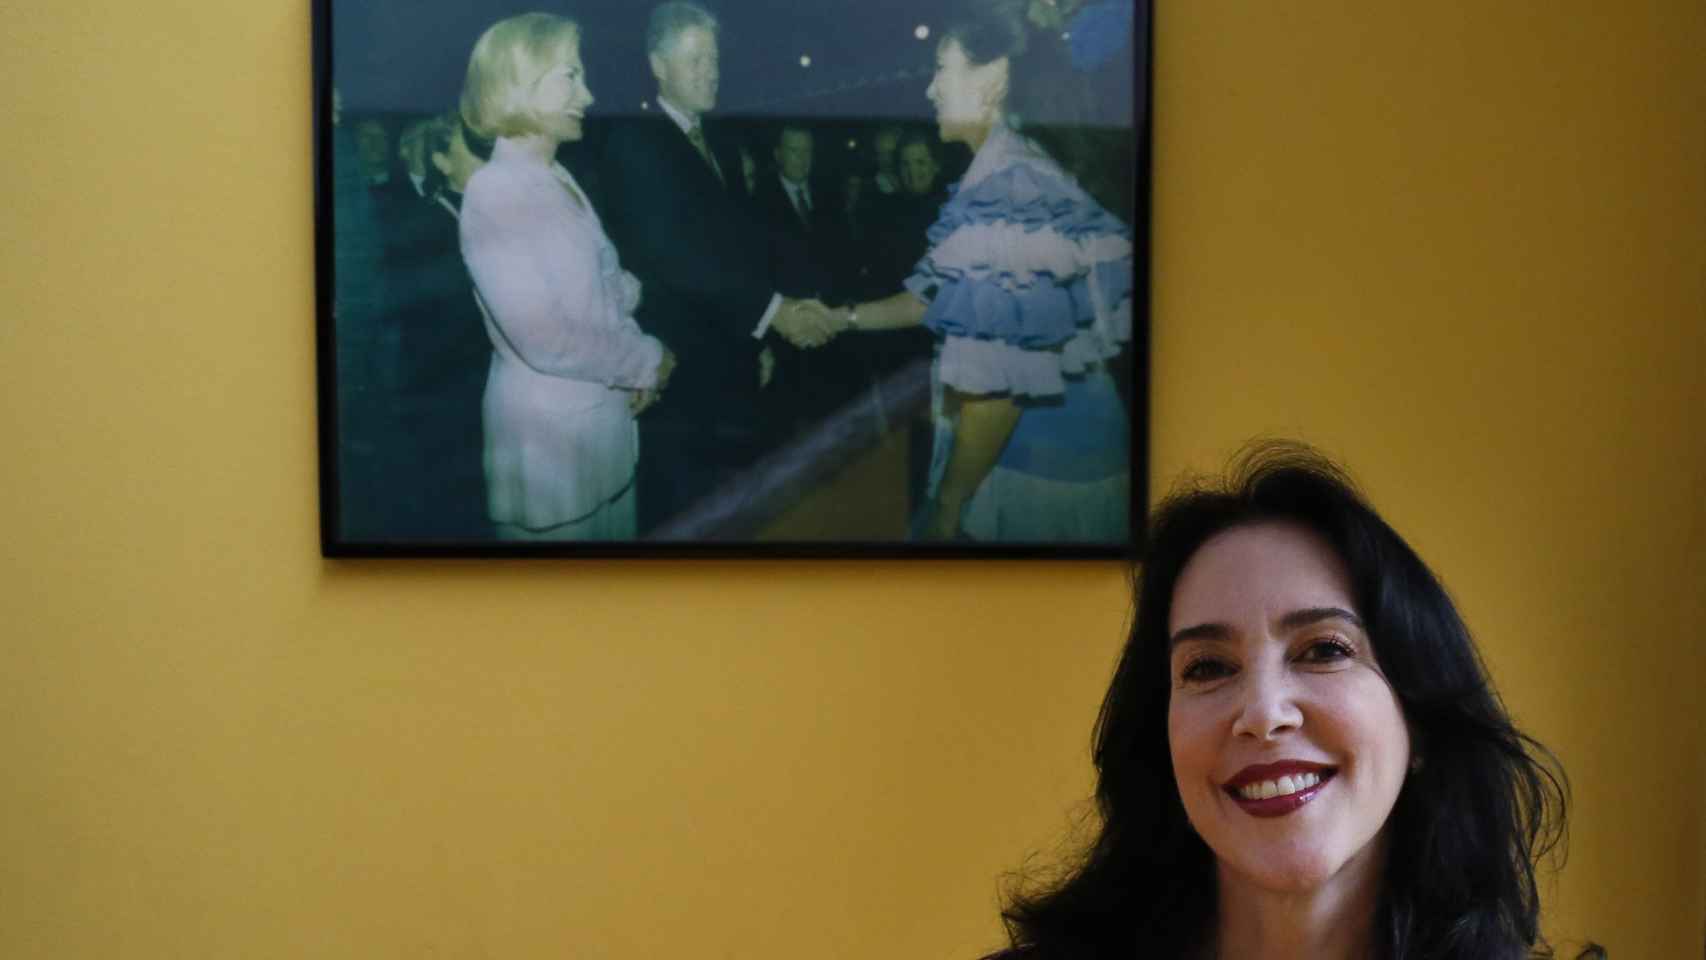 Diana Patricia muestra un cuadro del momento en el que conoció a los Clinton